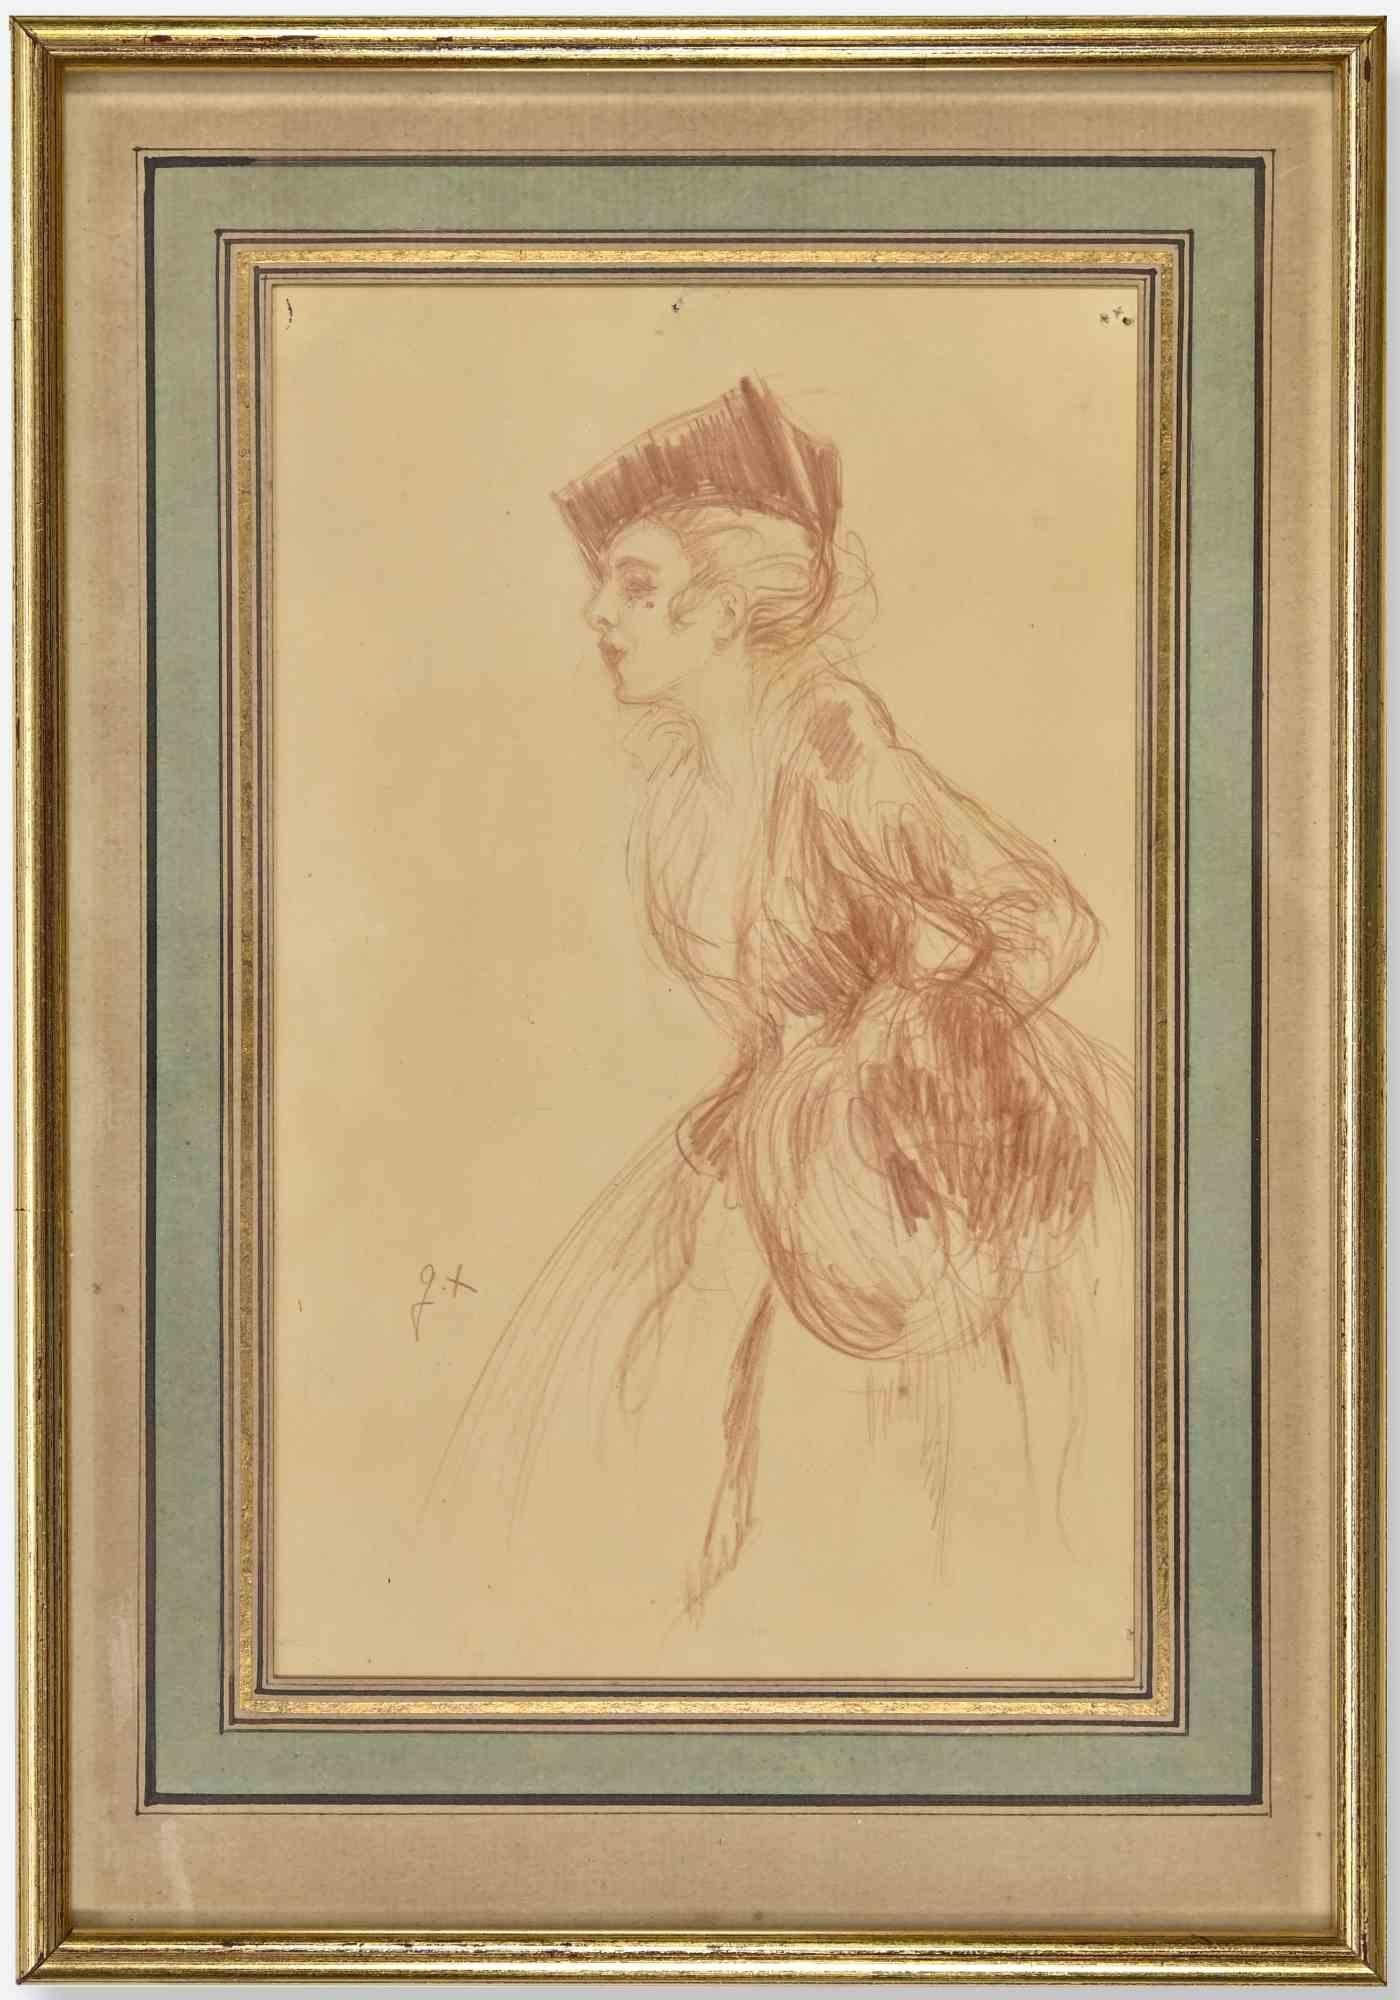 Woman ist ein modernes Kunstwerk des französischen Künstlers Jules Marie Auguste Leroux (Paris 1871-1954), Maler und Illustrator.

Eine Bleistiftzeichnung auf Papier.

Monogram des Künstlers auf der linken Seite.

Auguste Leroux war ein brillanter